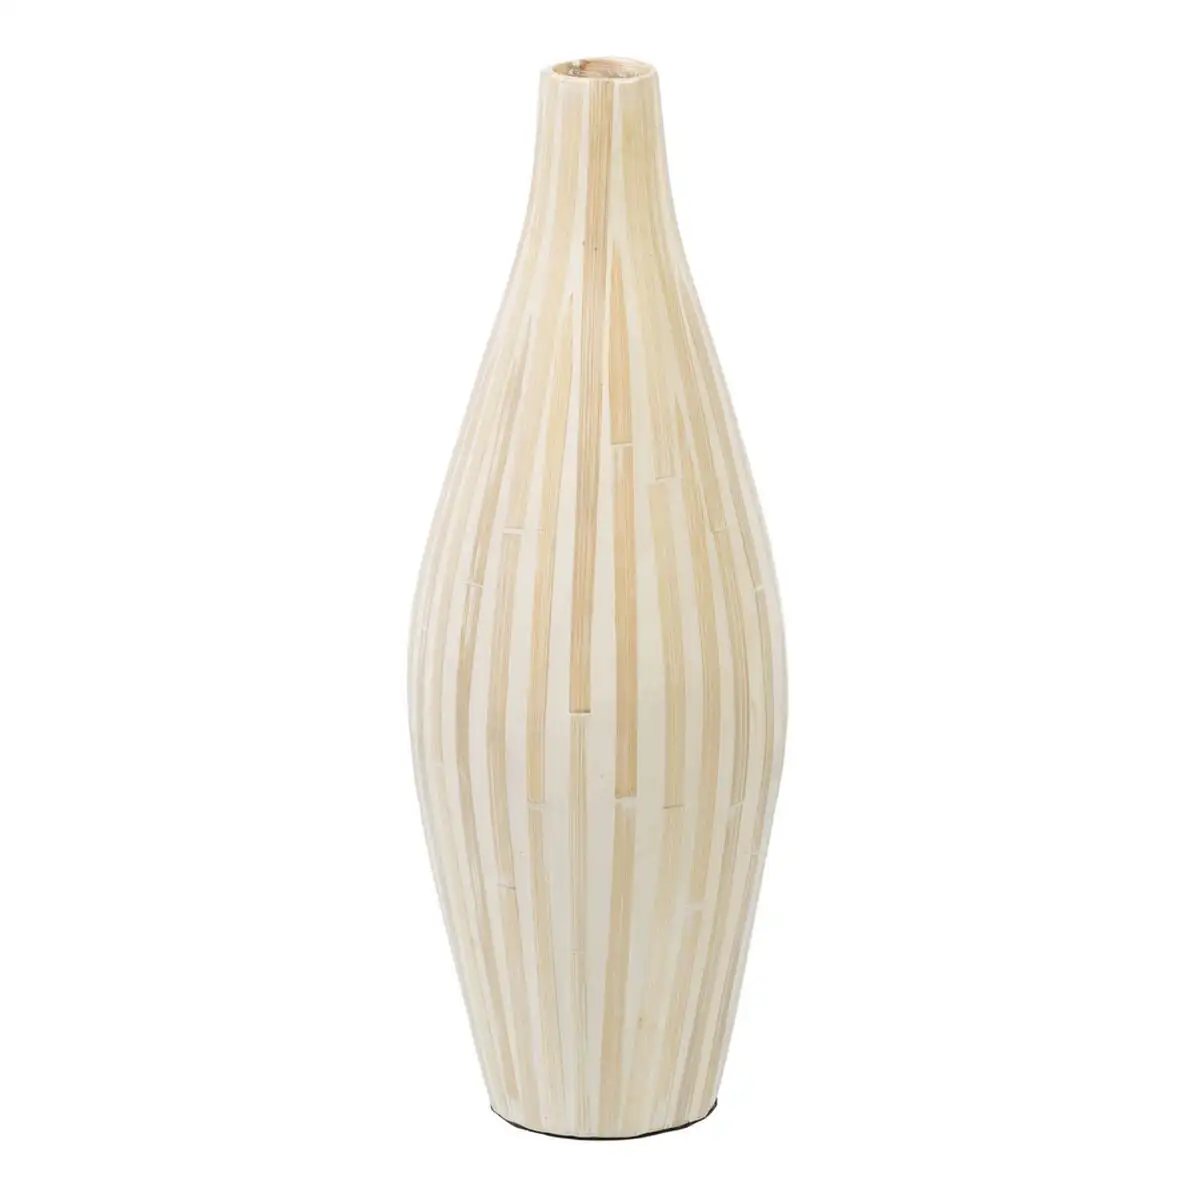 Vase 18 x 18 x 52 cm beige bambou_6104. DIAYTAR SENEGAL - L'Art de Choisir, l'Art de Se Distinquer. Naviguez à travers notre catalogue et choisissez des produits qui ajoutent une note d'élégance à votre style unique.